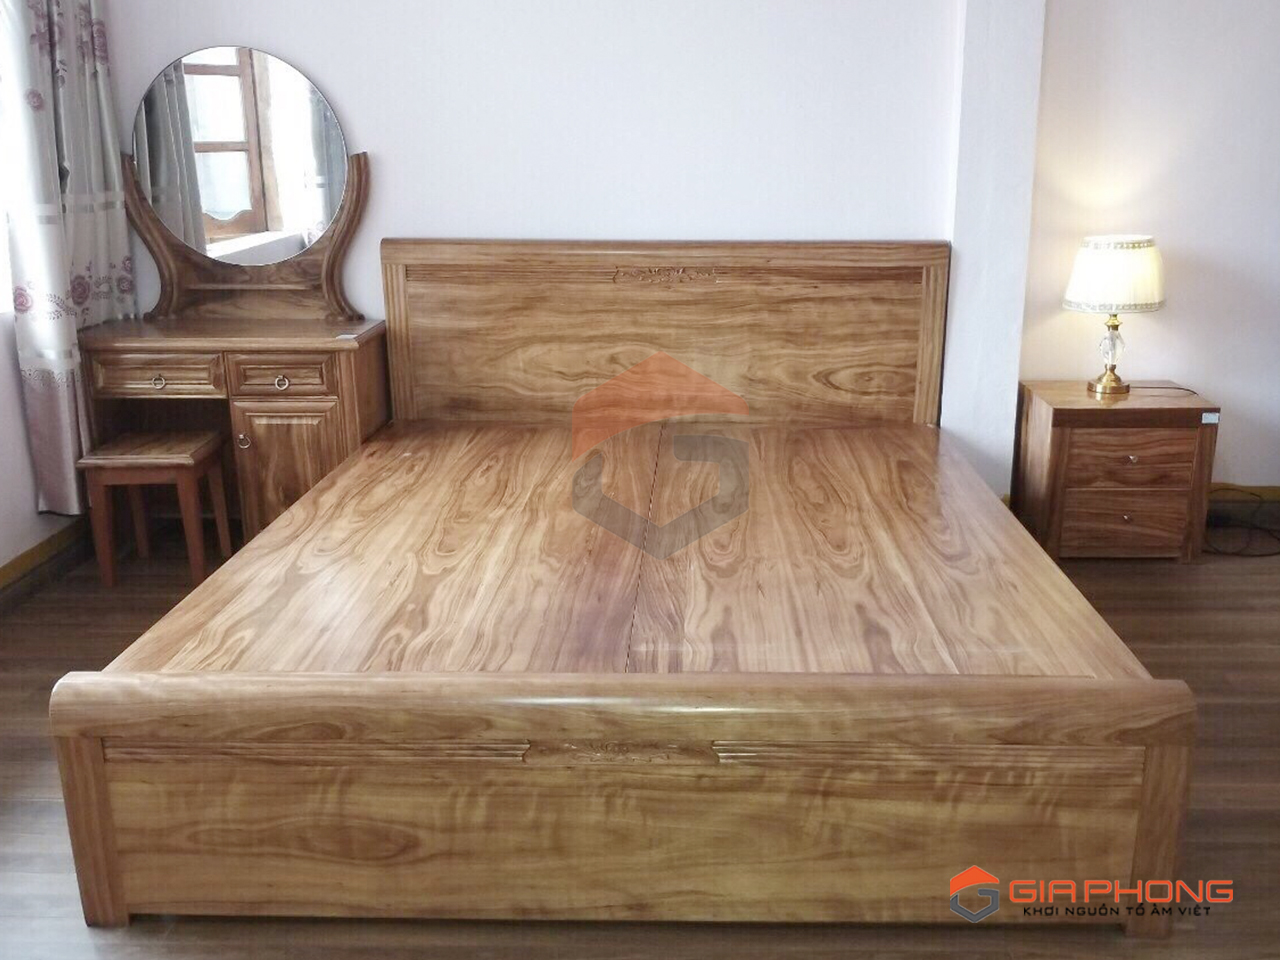 Các mẫu giường ngủ bằng gỗ tự nhiên ĐẸP - HIỆN ĐẠI nhất 2018 3